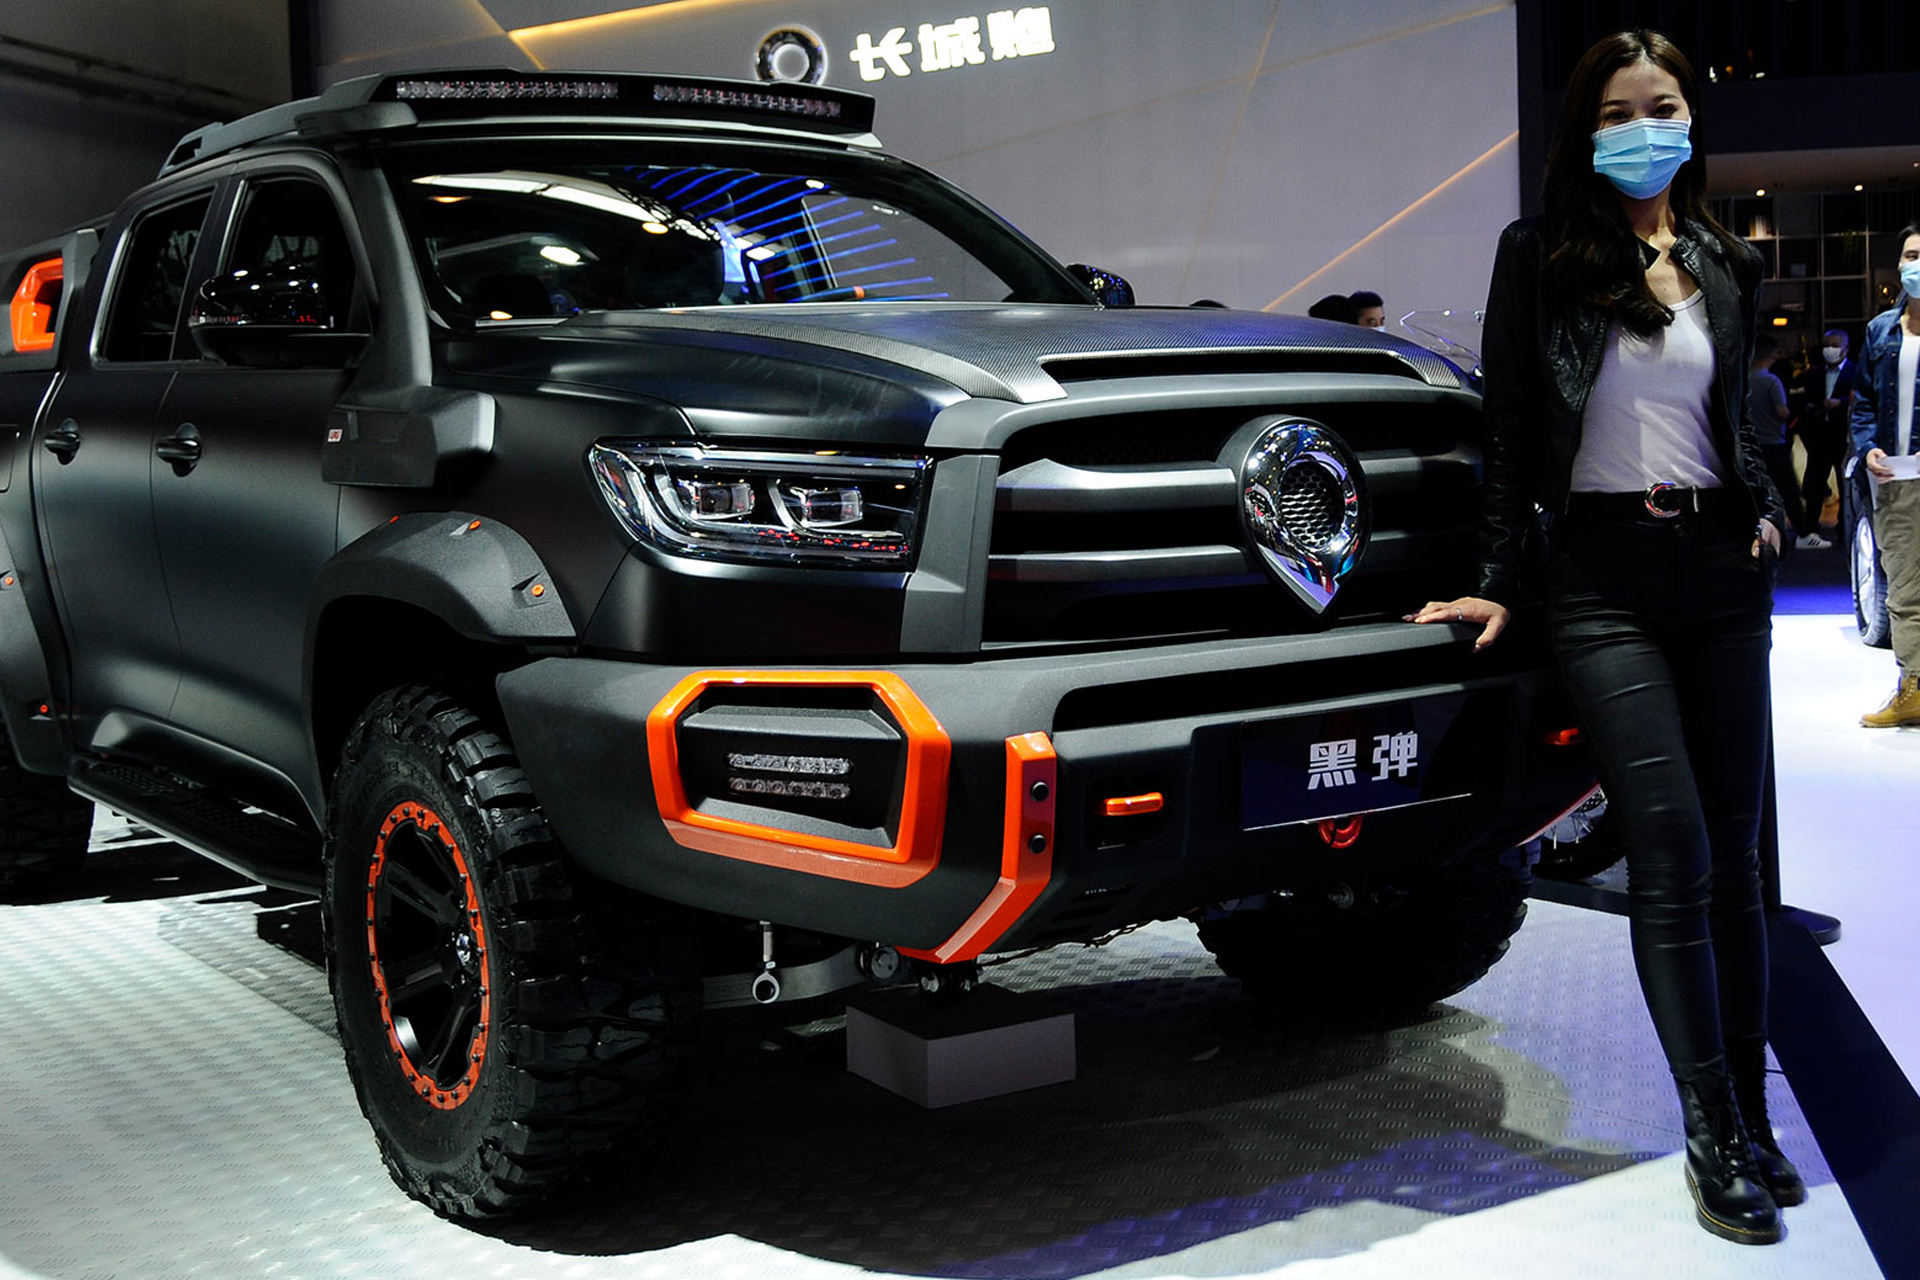 شیائومی قصد دارد با کمک شرکتی چینی خودروی برقی تولید کند